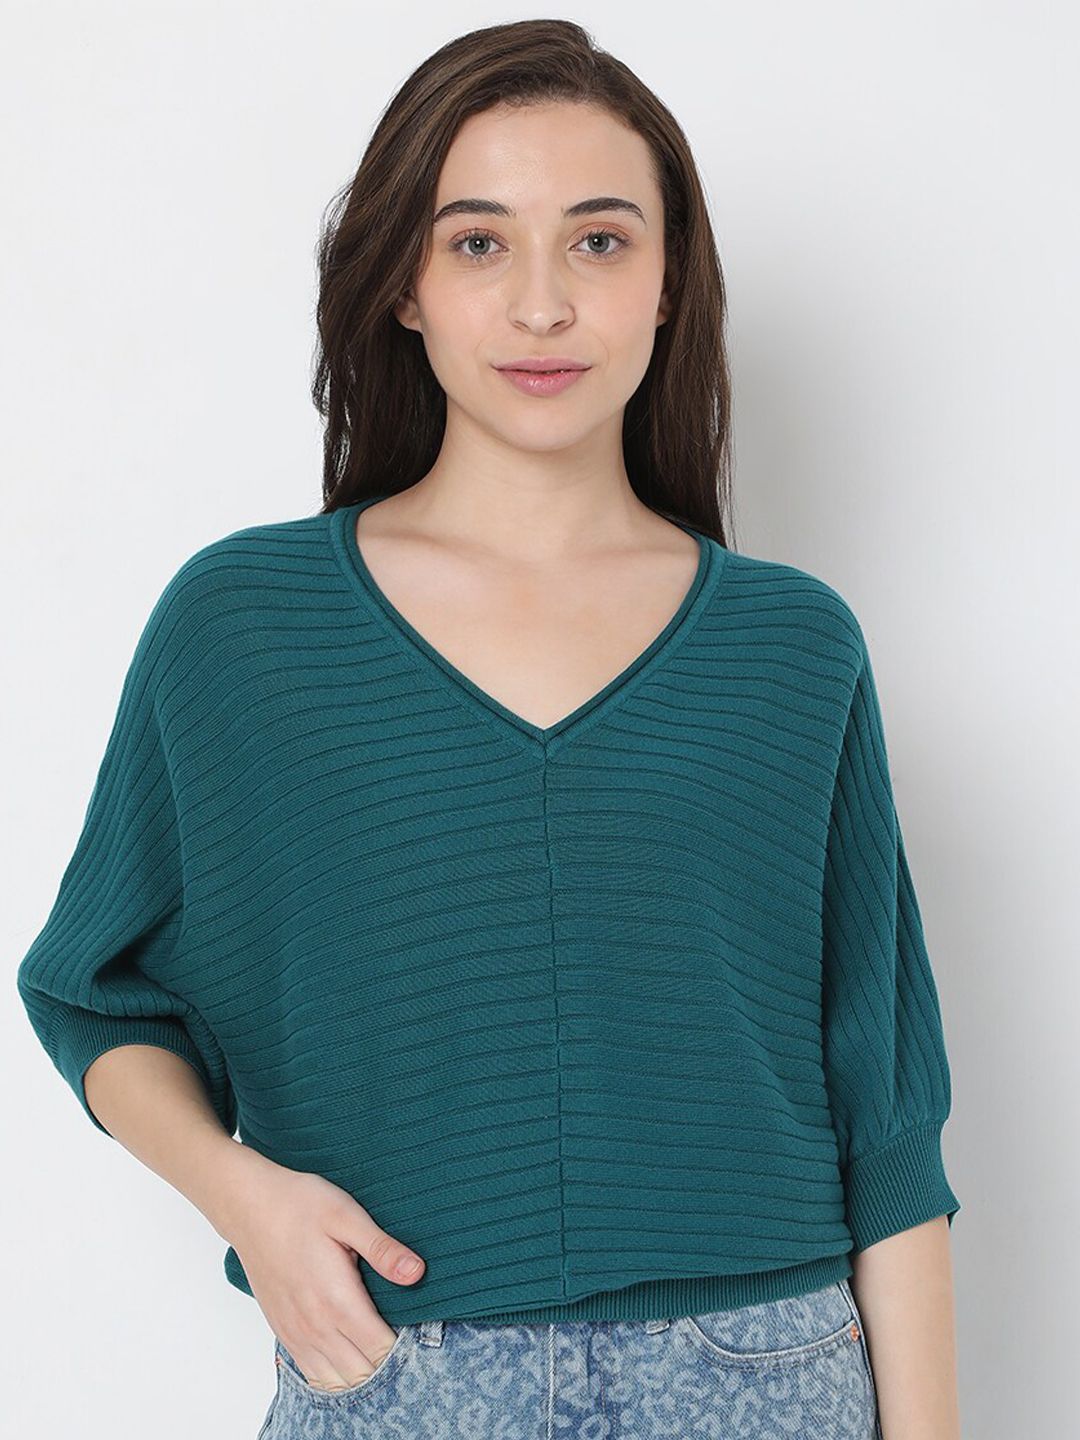 Vero Moda Women Green Striped Pullover Sweaters Price in India